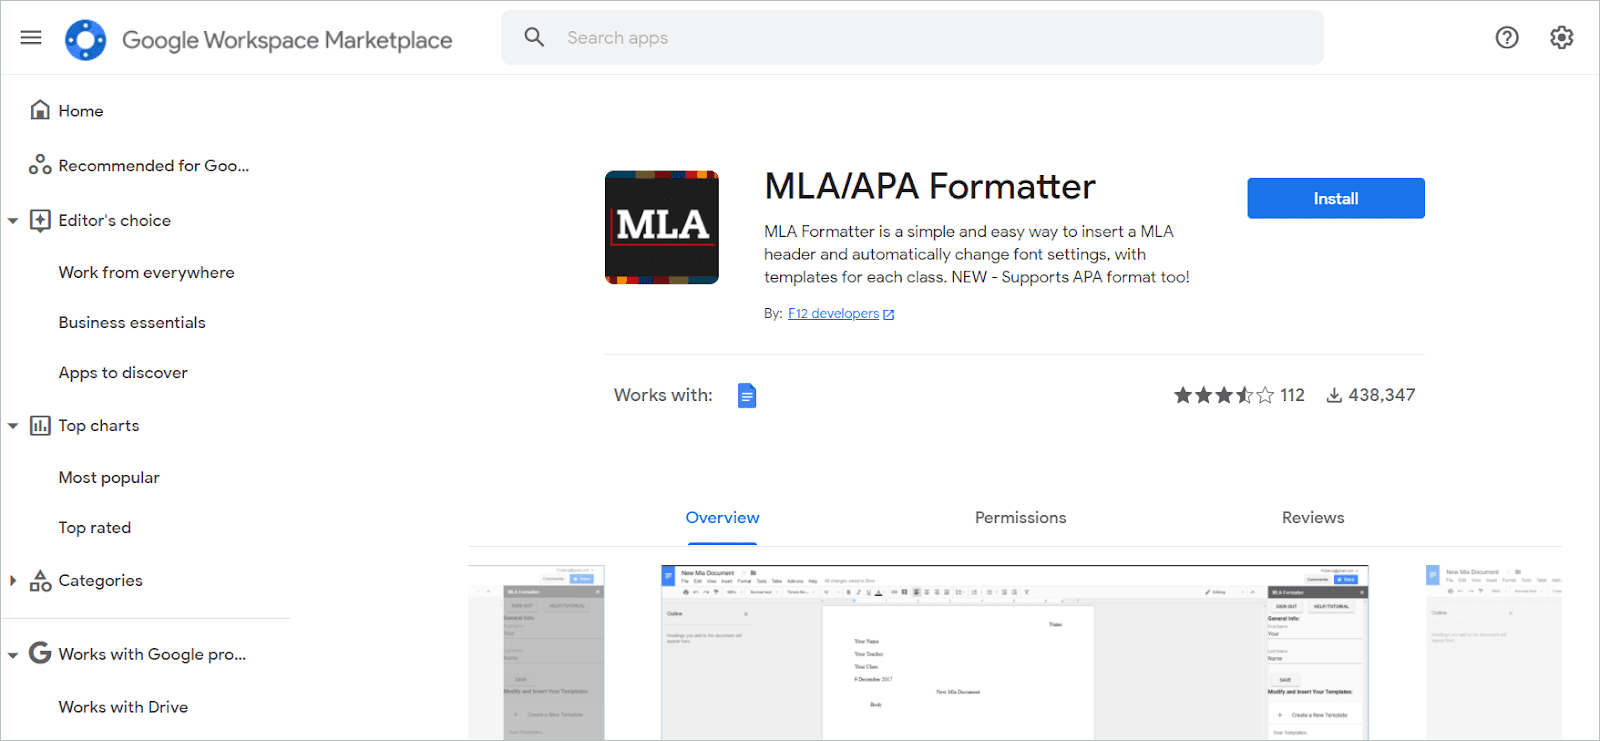 MLA/APA Formatter